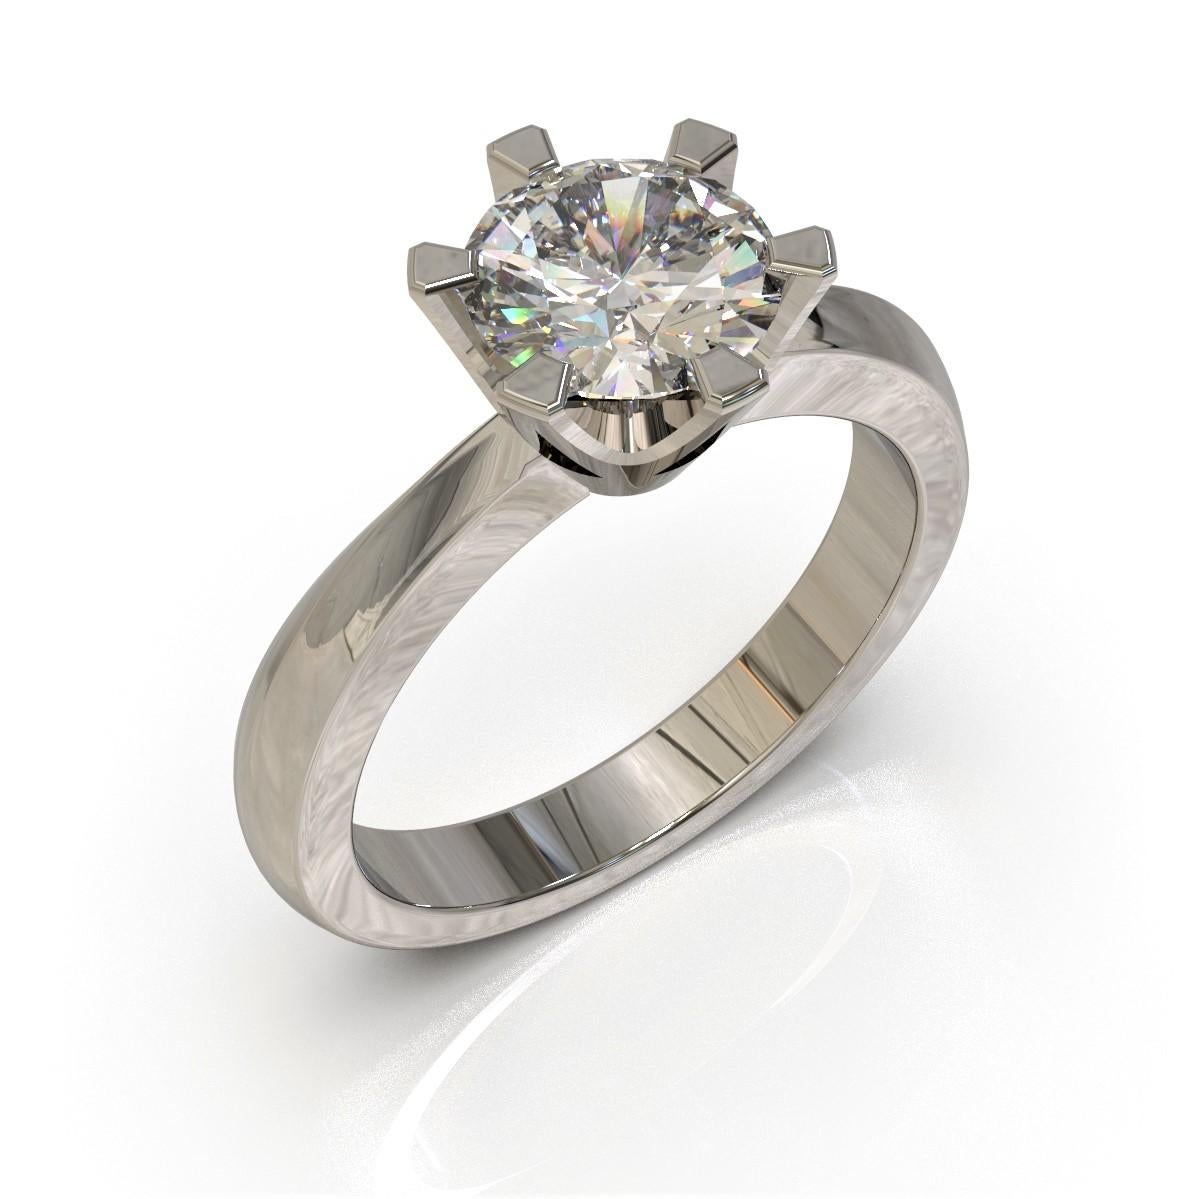 10 carat diamond ring price